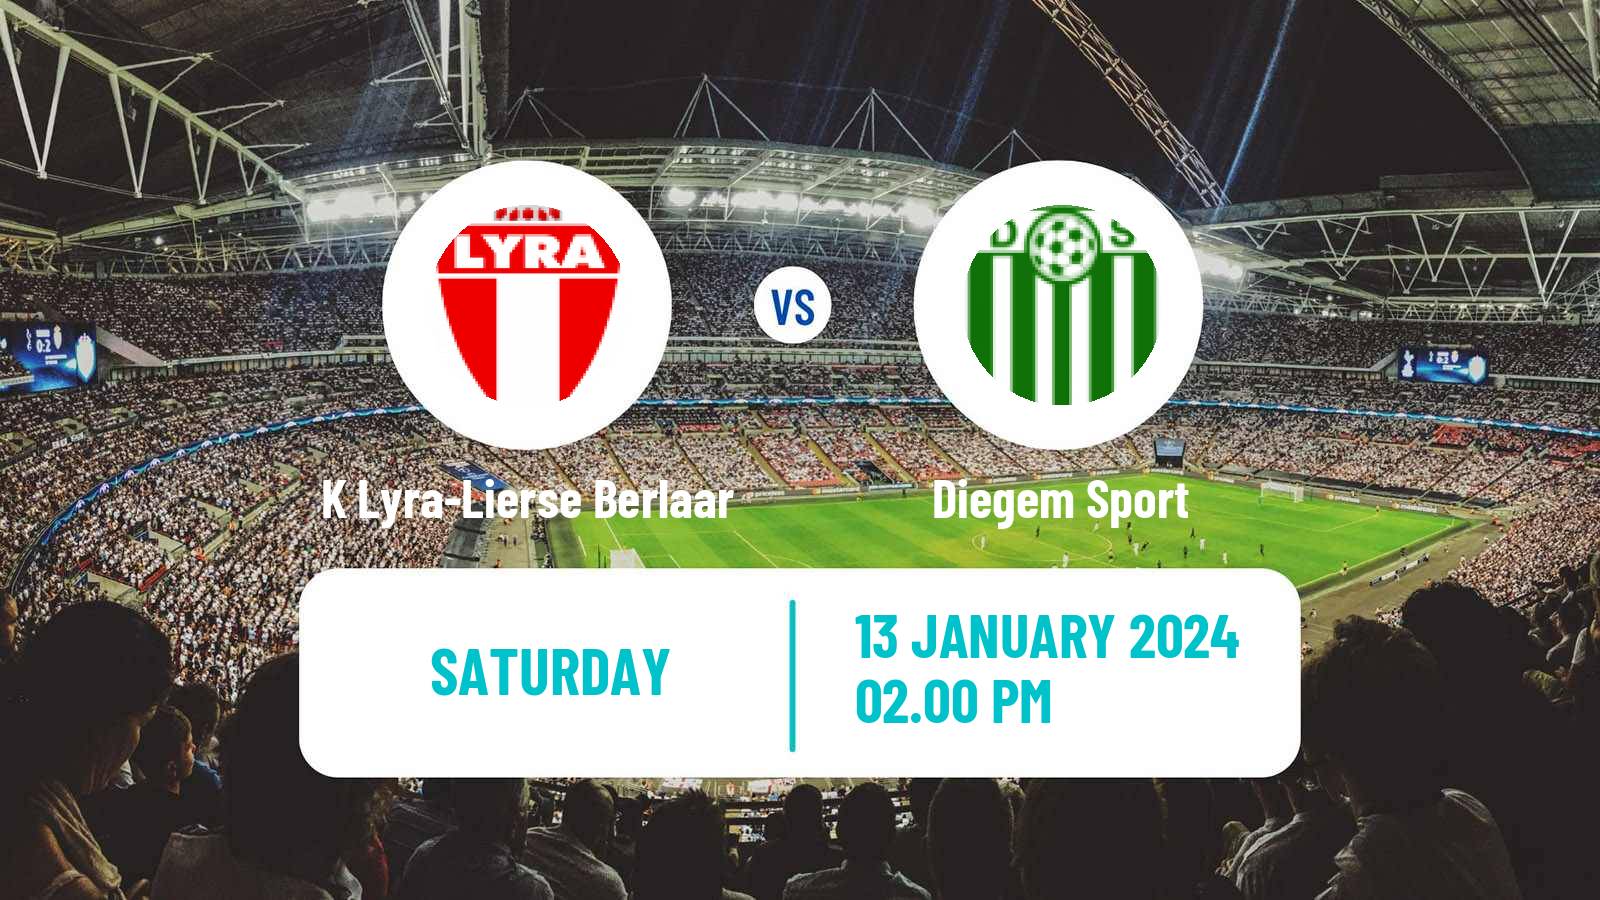 Soccer Belgian Second Amateur Division Group B K Lyra-Lierse Berlaar - Diegem Sport